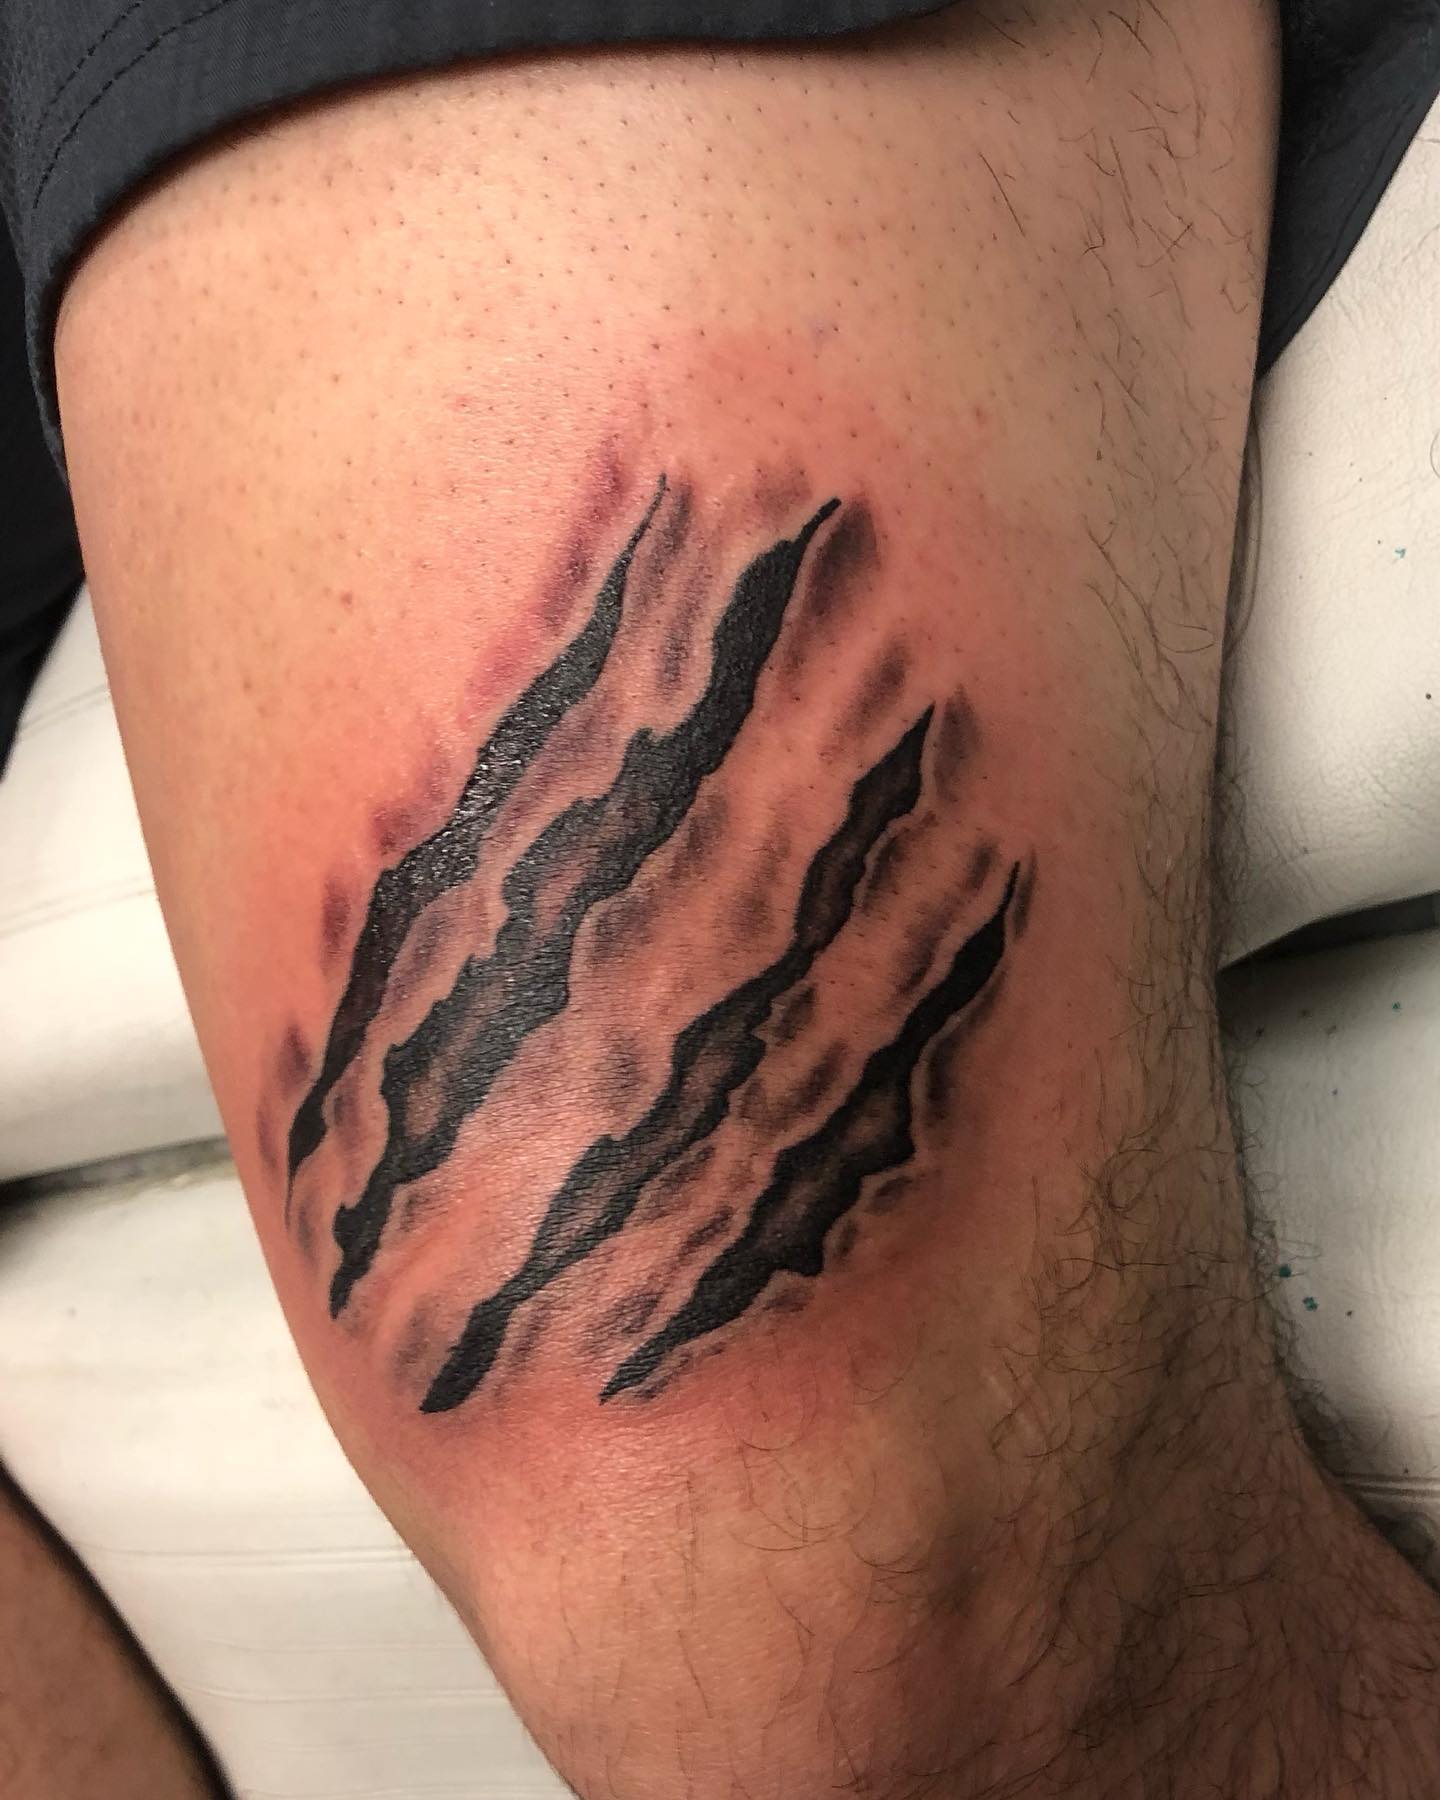 Cicatriz encima de tatuaje en la rodilla